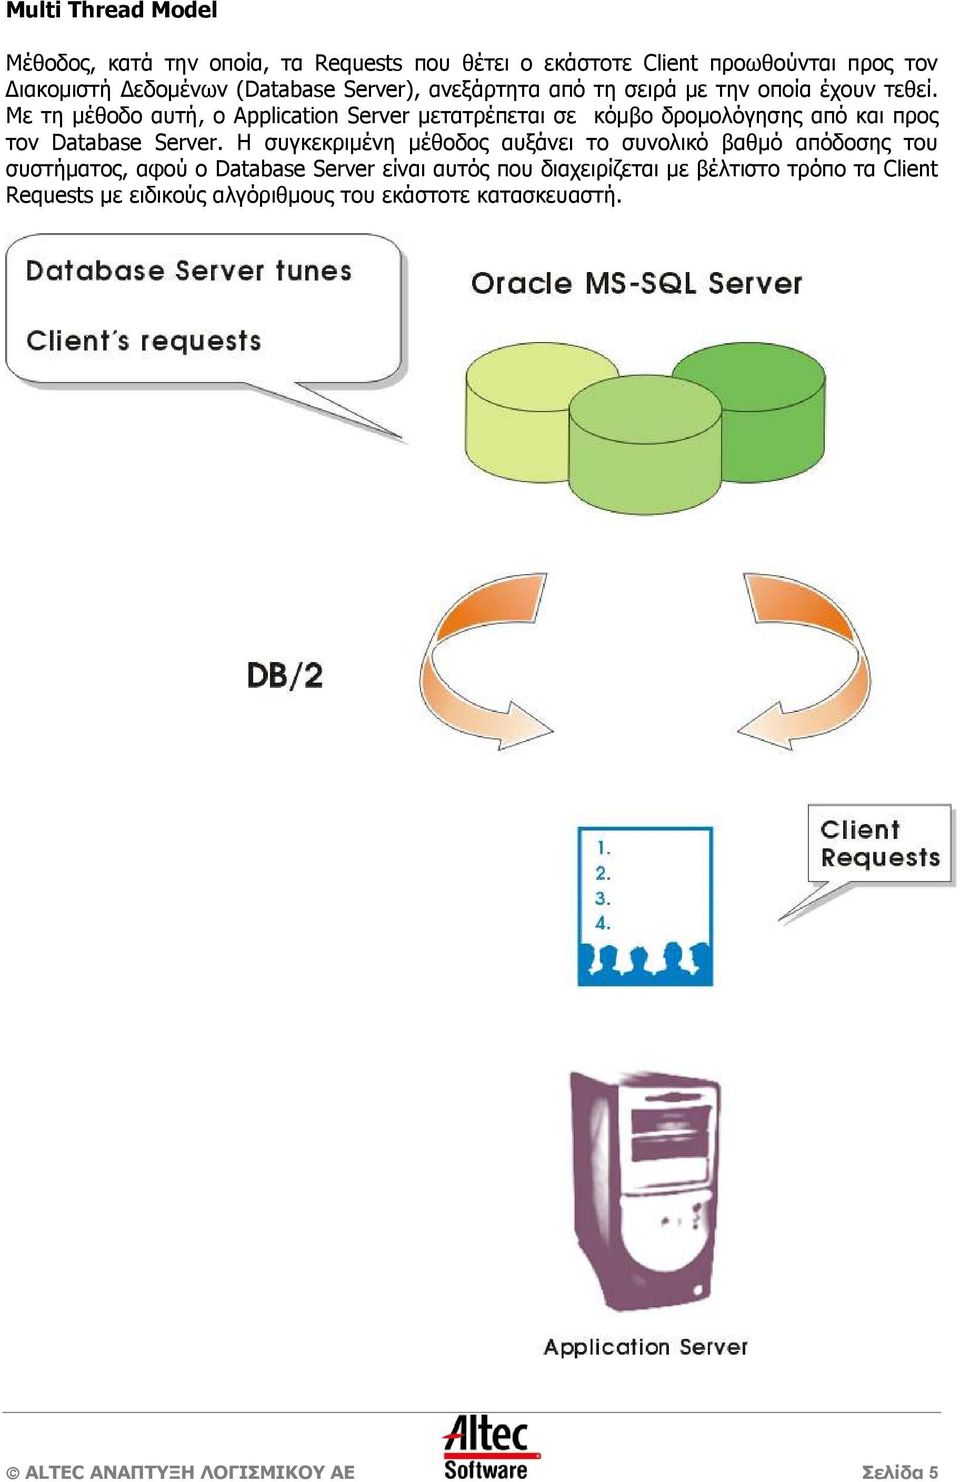 Με τη µέθοδο αυτή, ο Application Server µετατρέπεται σε κόµβο δροµολόγησης από και προς τον Database Server.